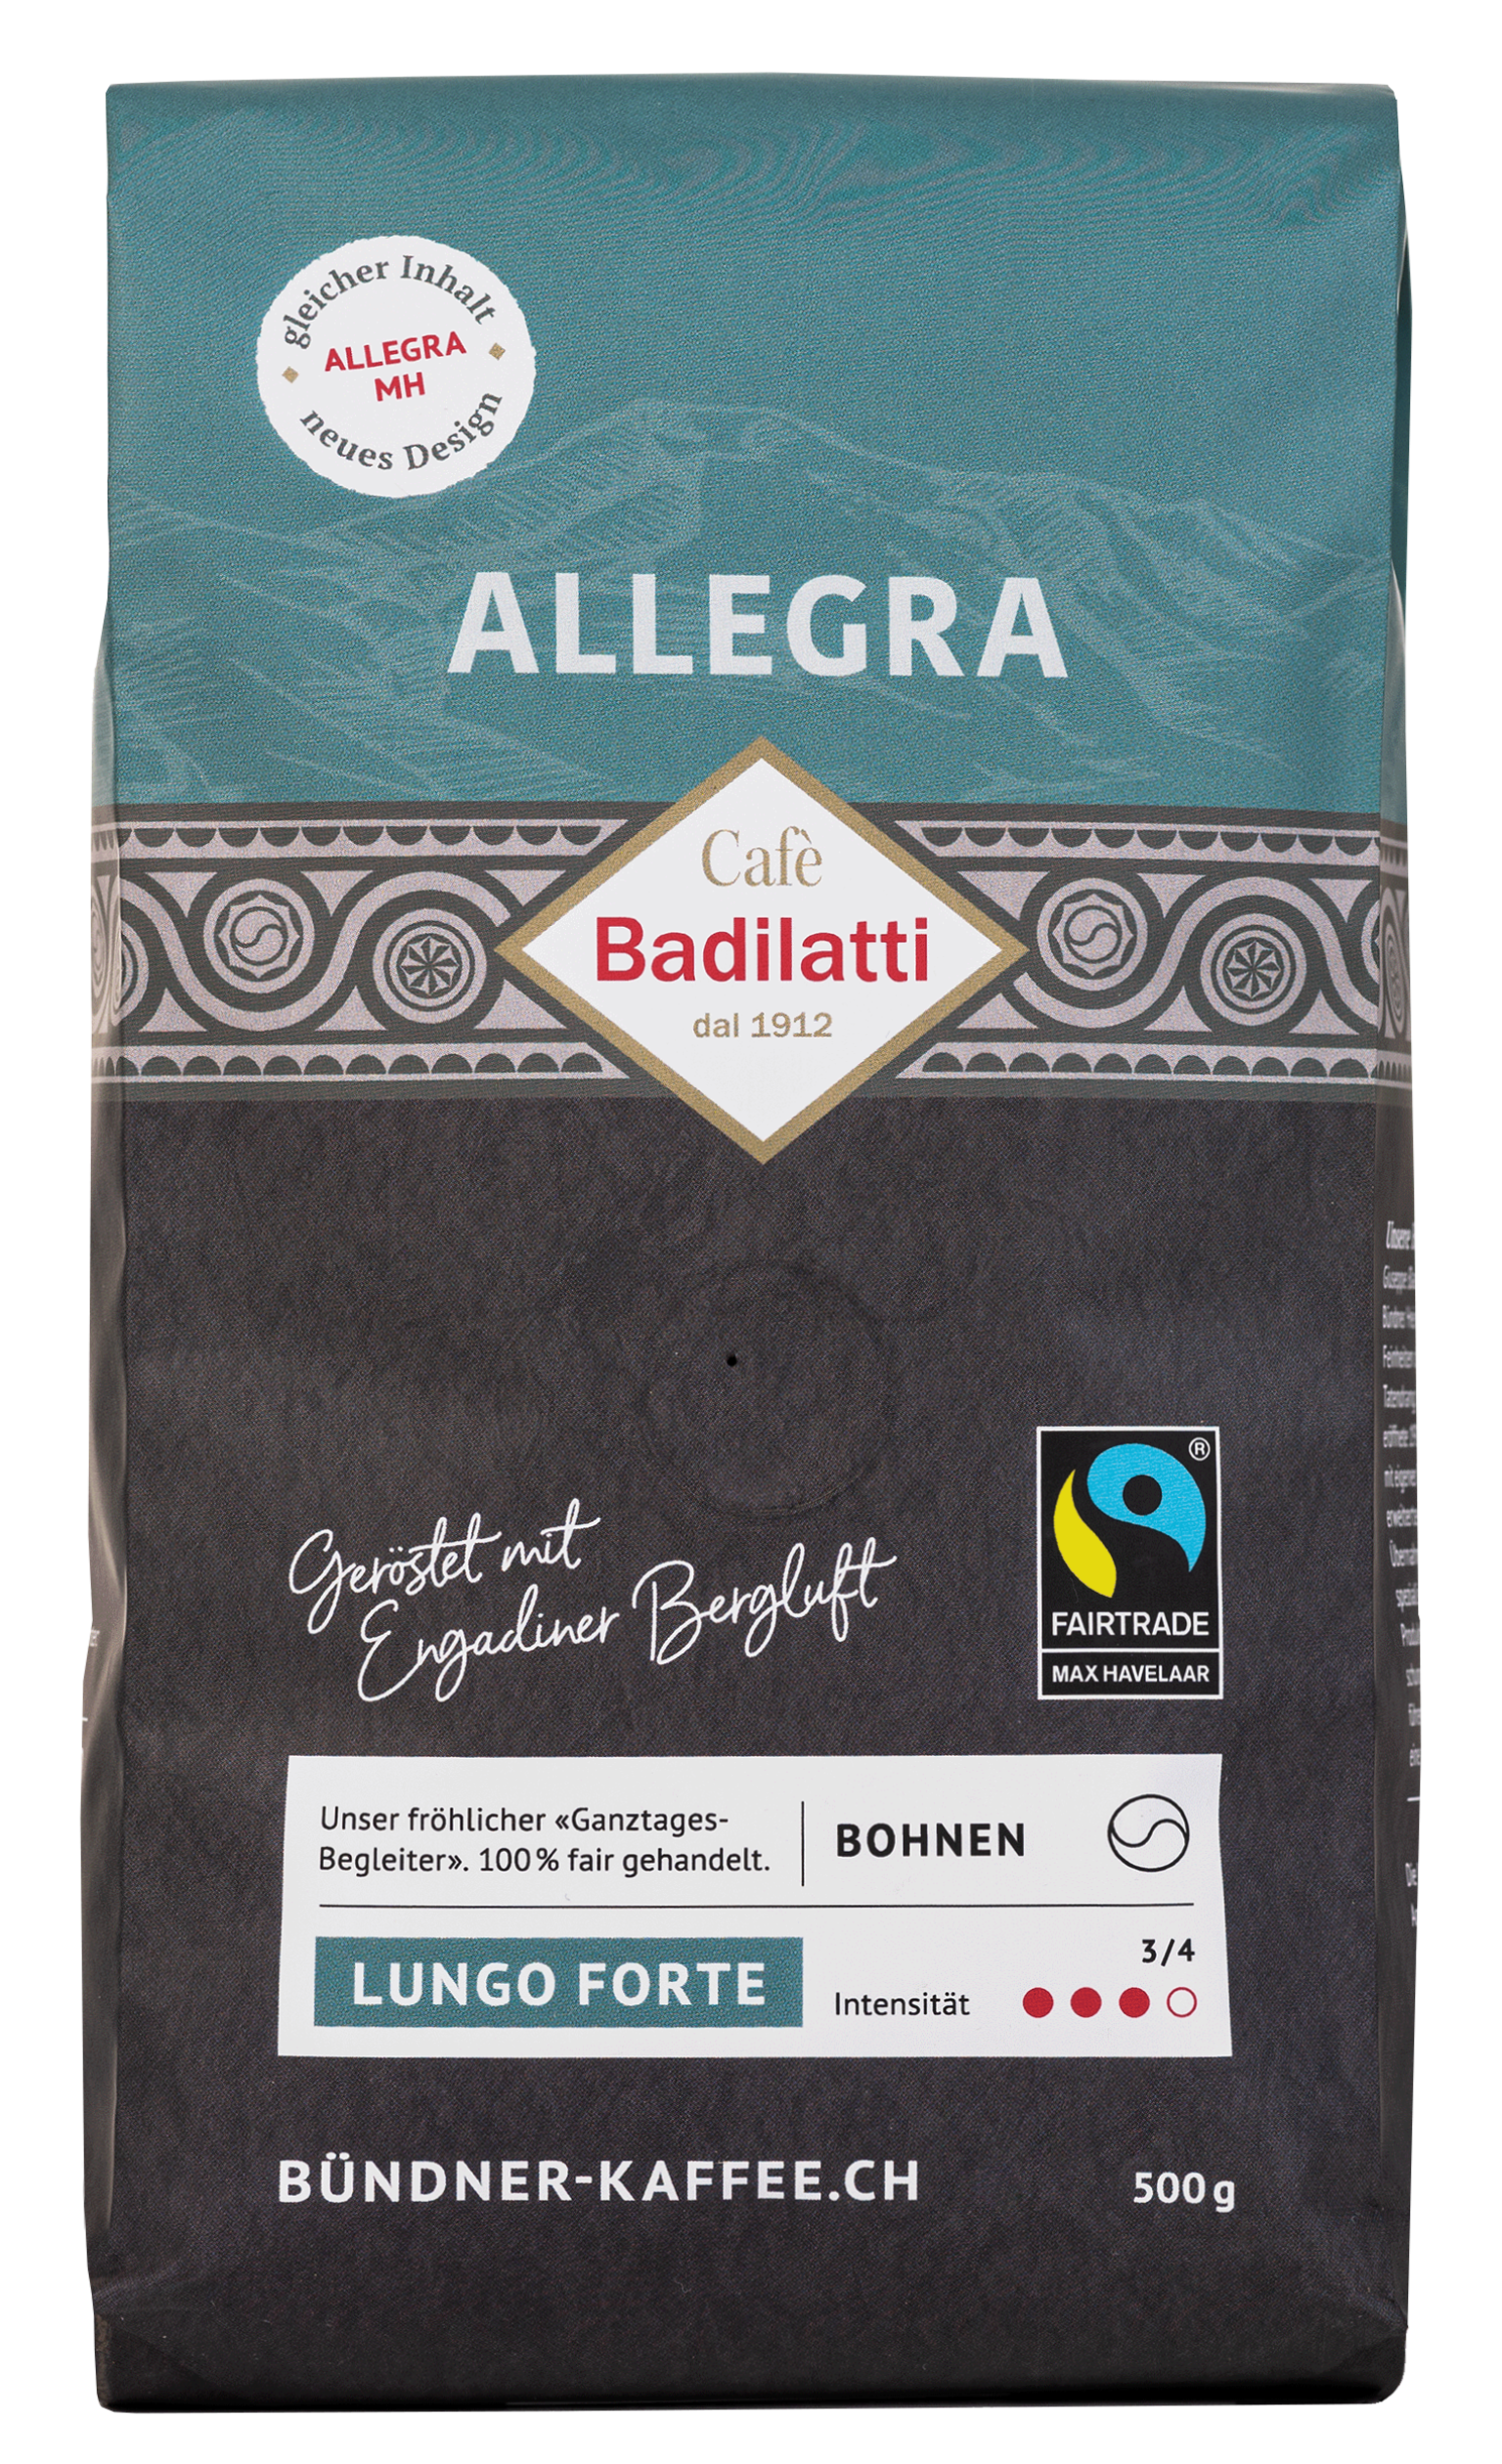 Verpackung Kaffee Badilatti in der Sorte Allegra Fairtrade, Lungo forte.